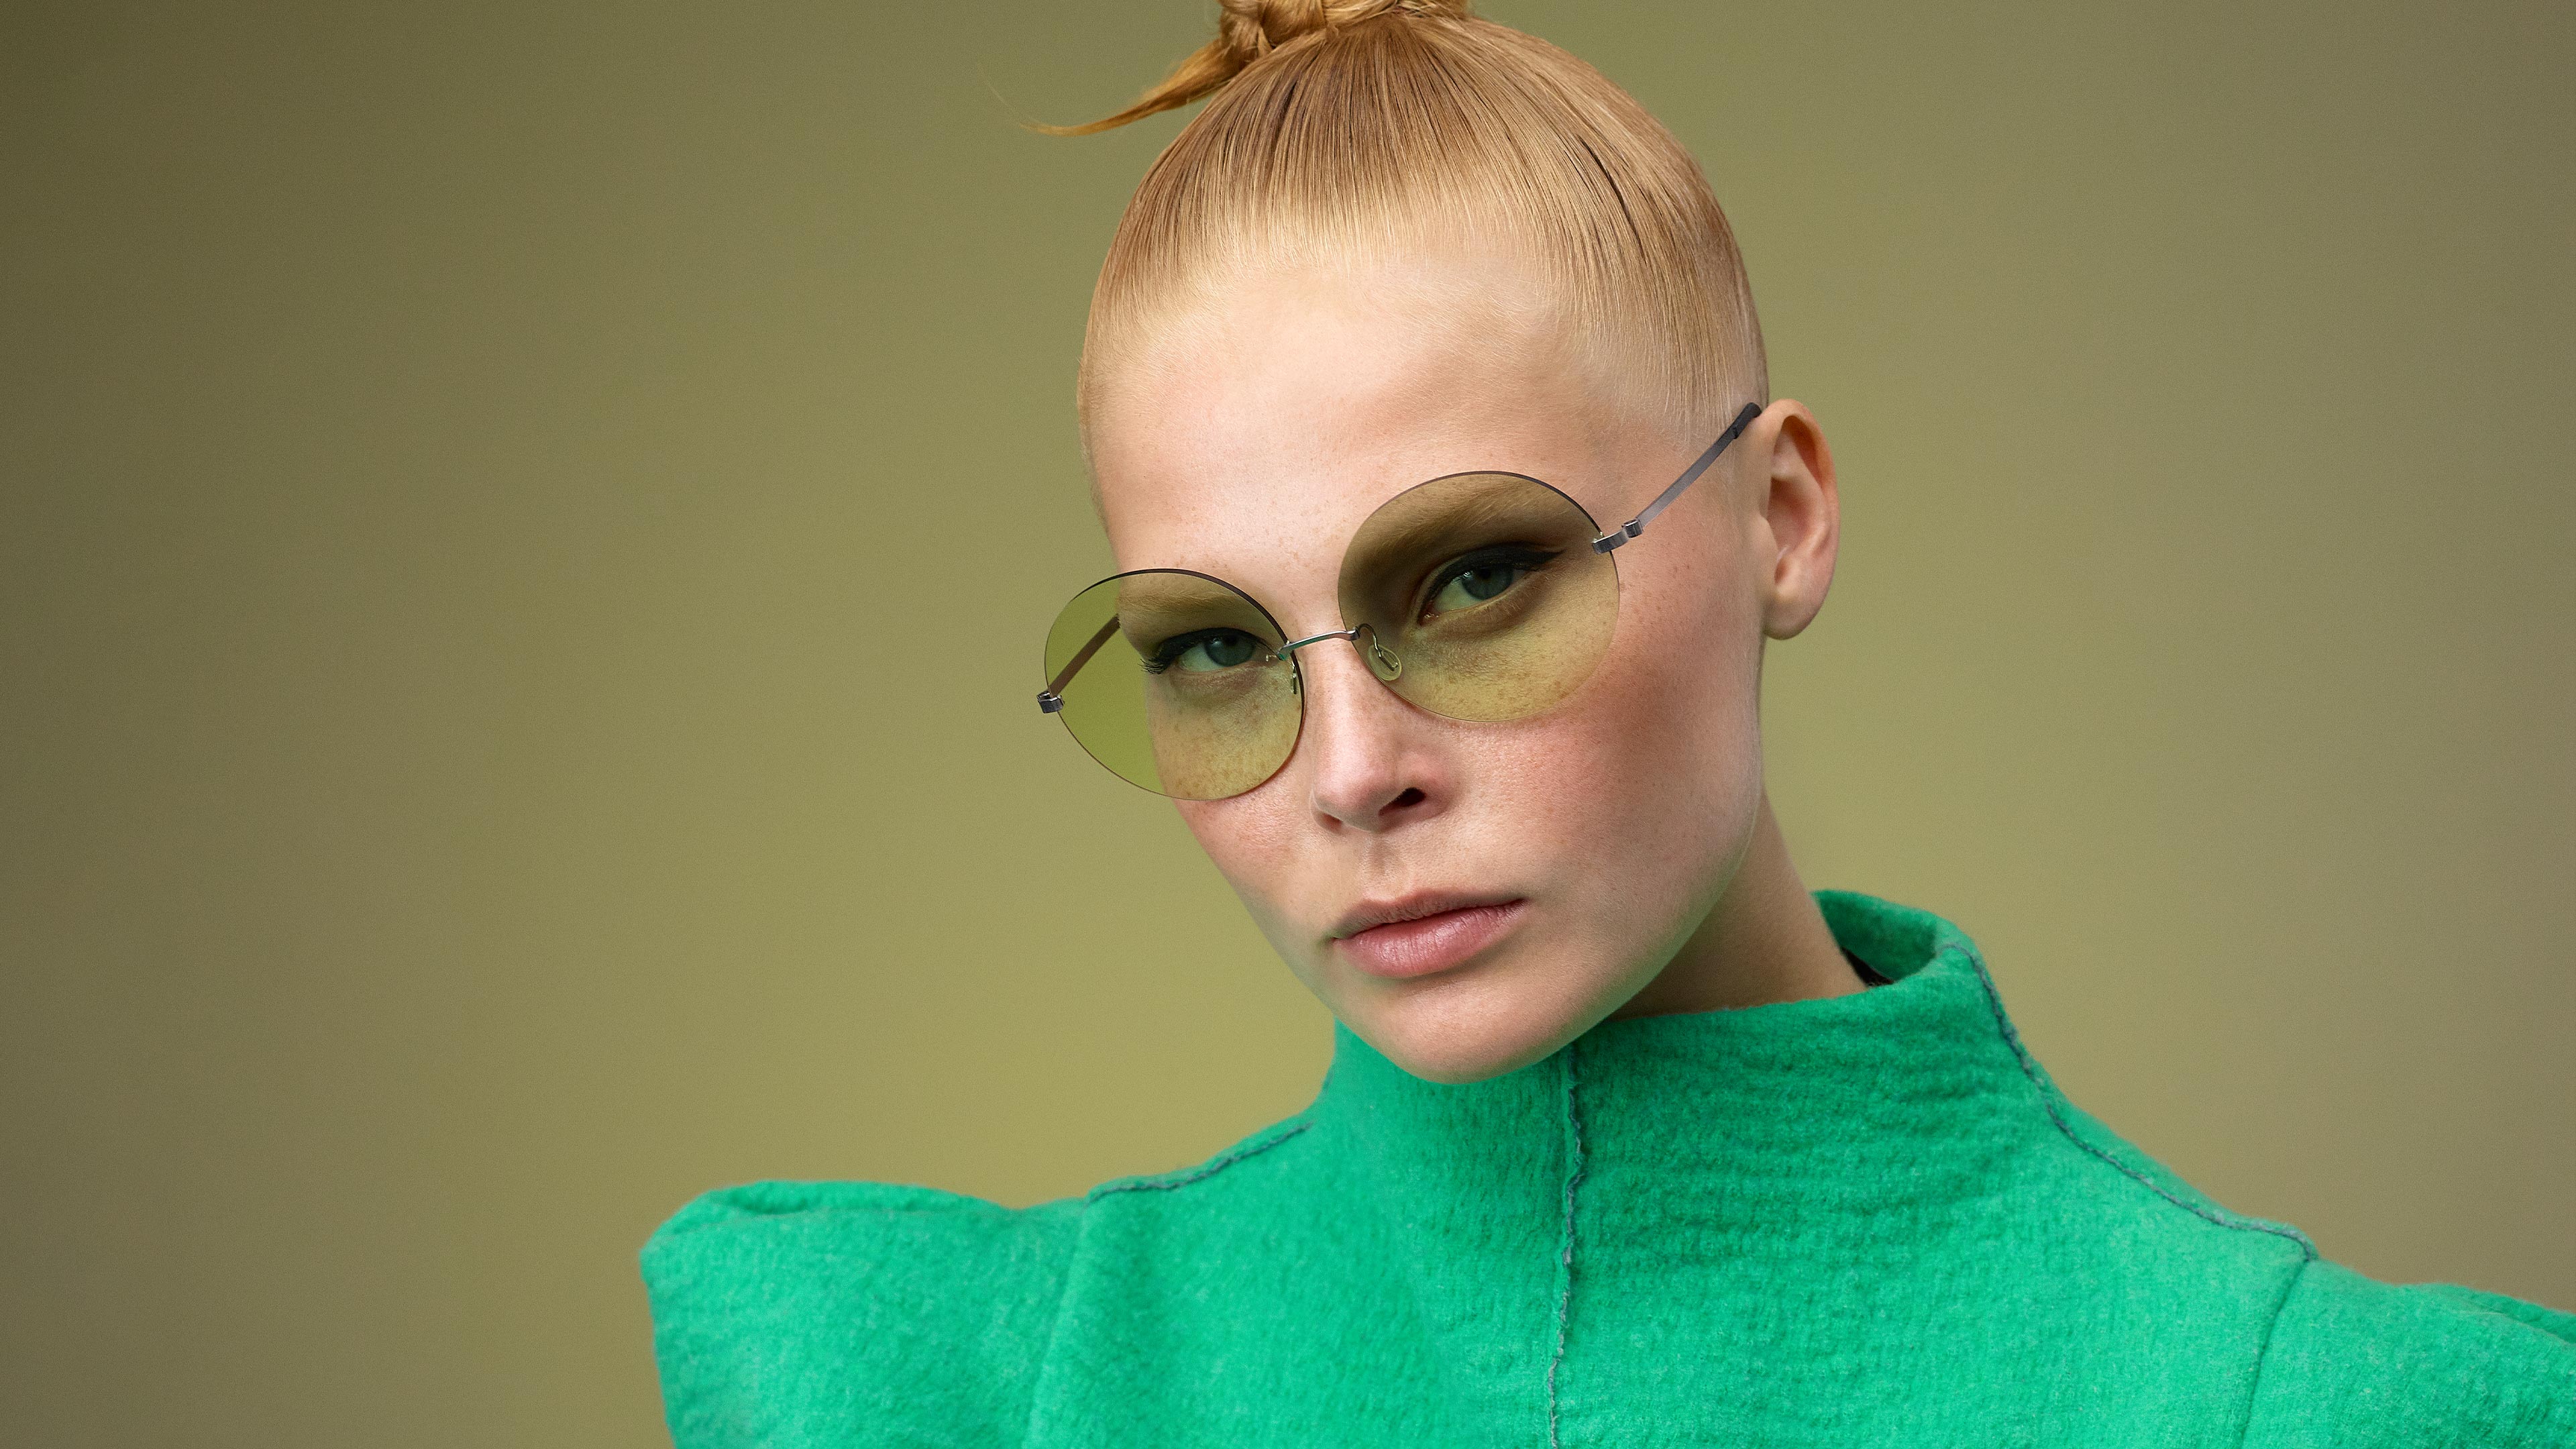 Occhiali da sole da donna colorati verdi modello 2395 della collezione LINDBERG Strip3p Titanium